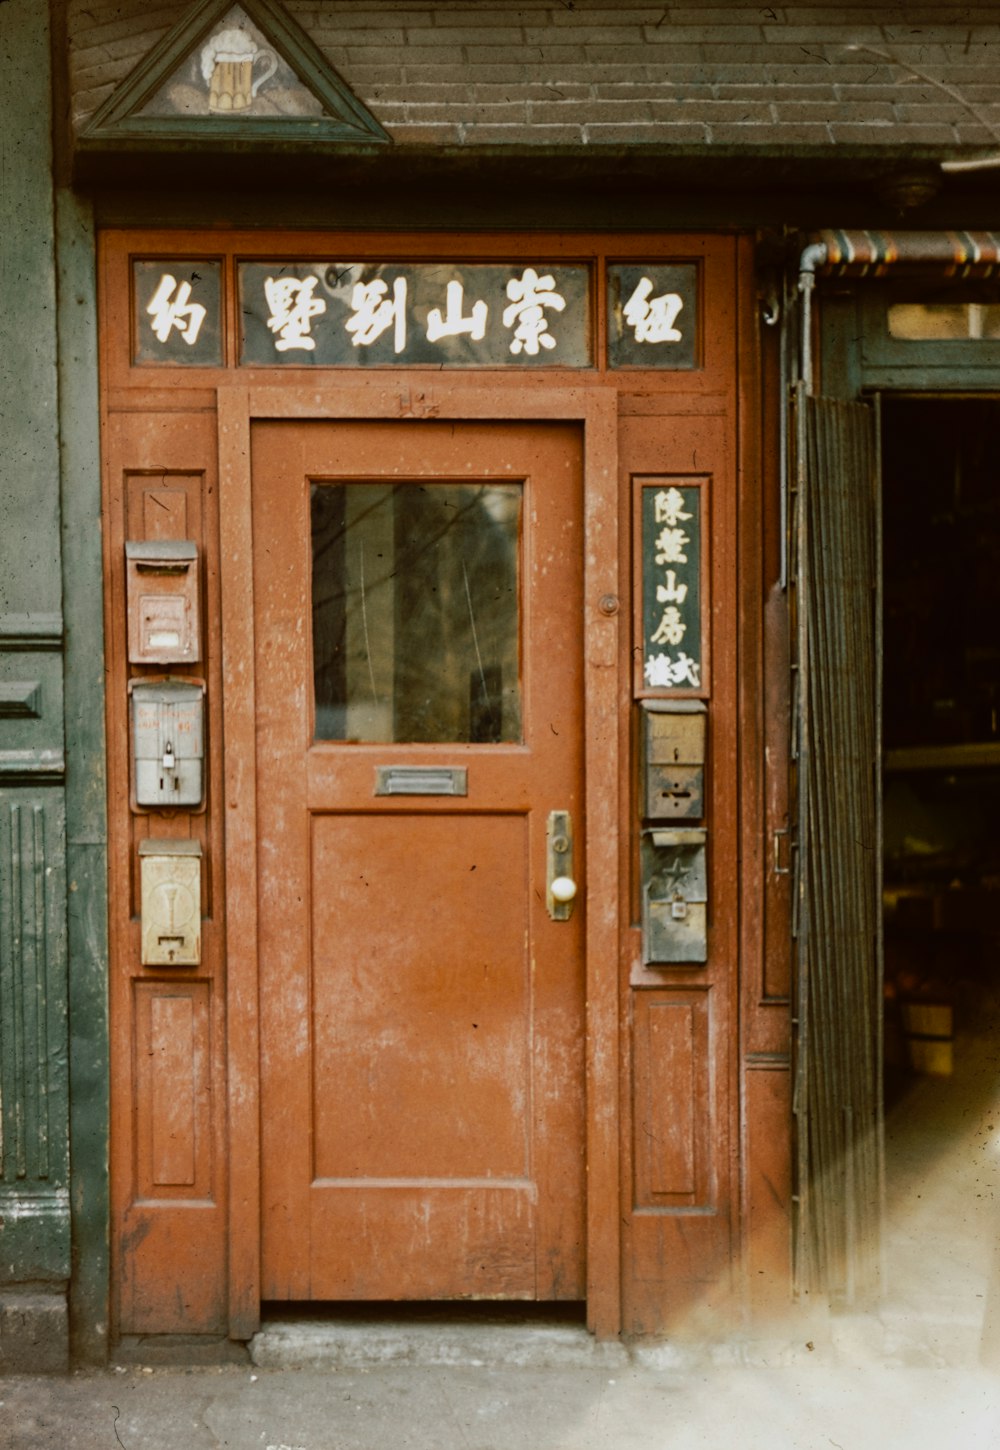 Uma porta vermelha com escrita asiática